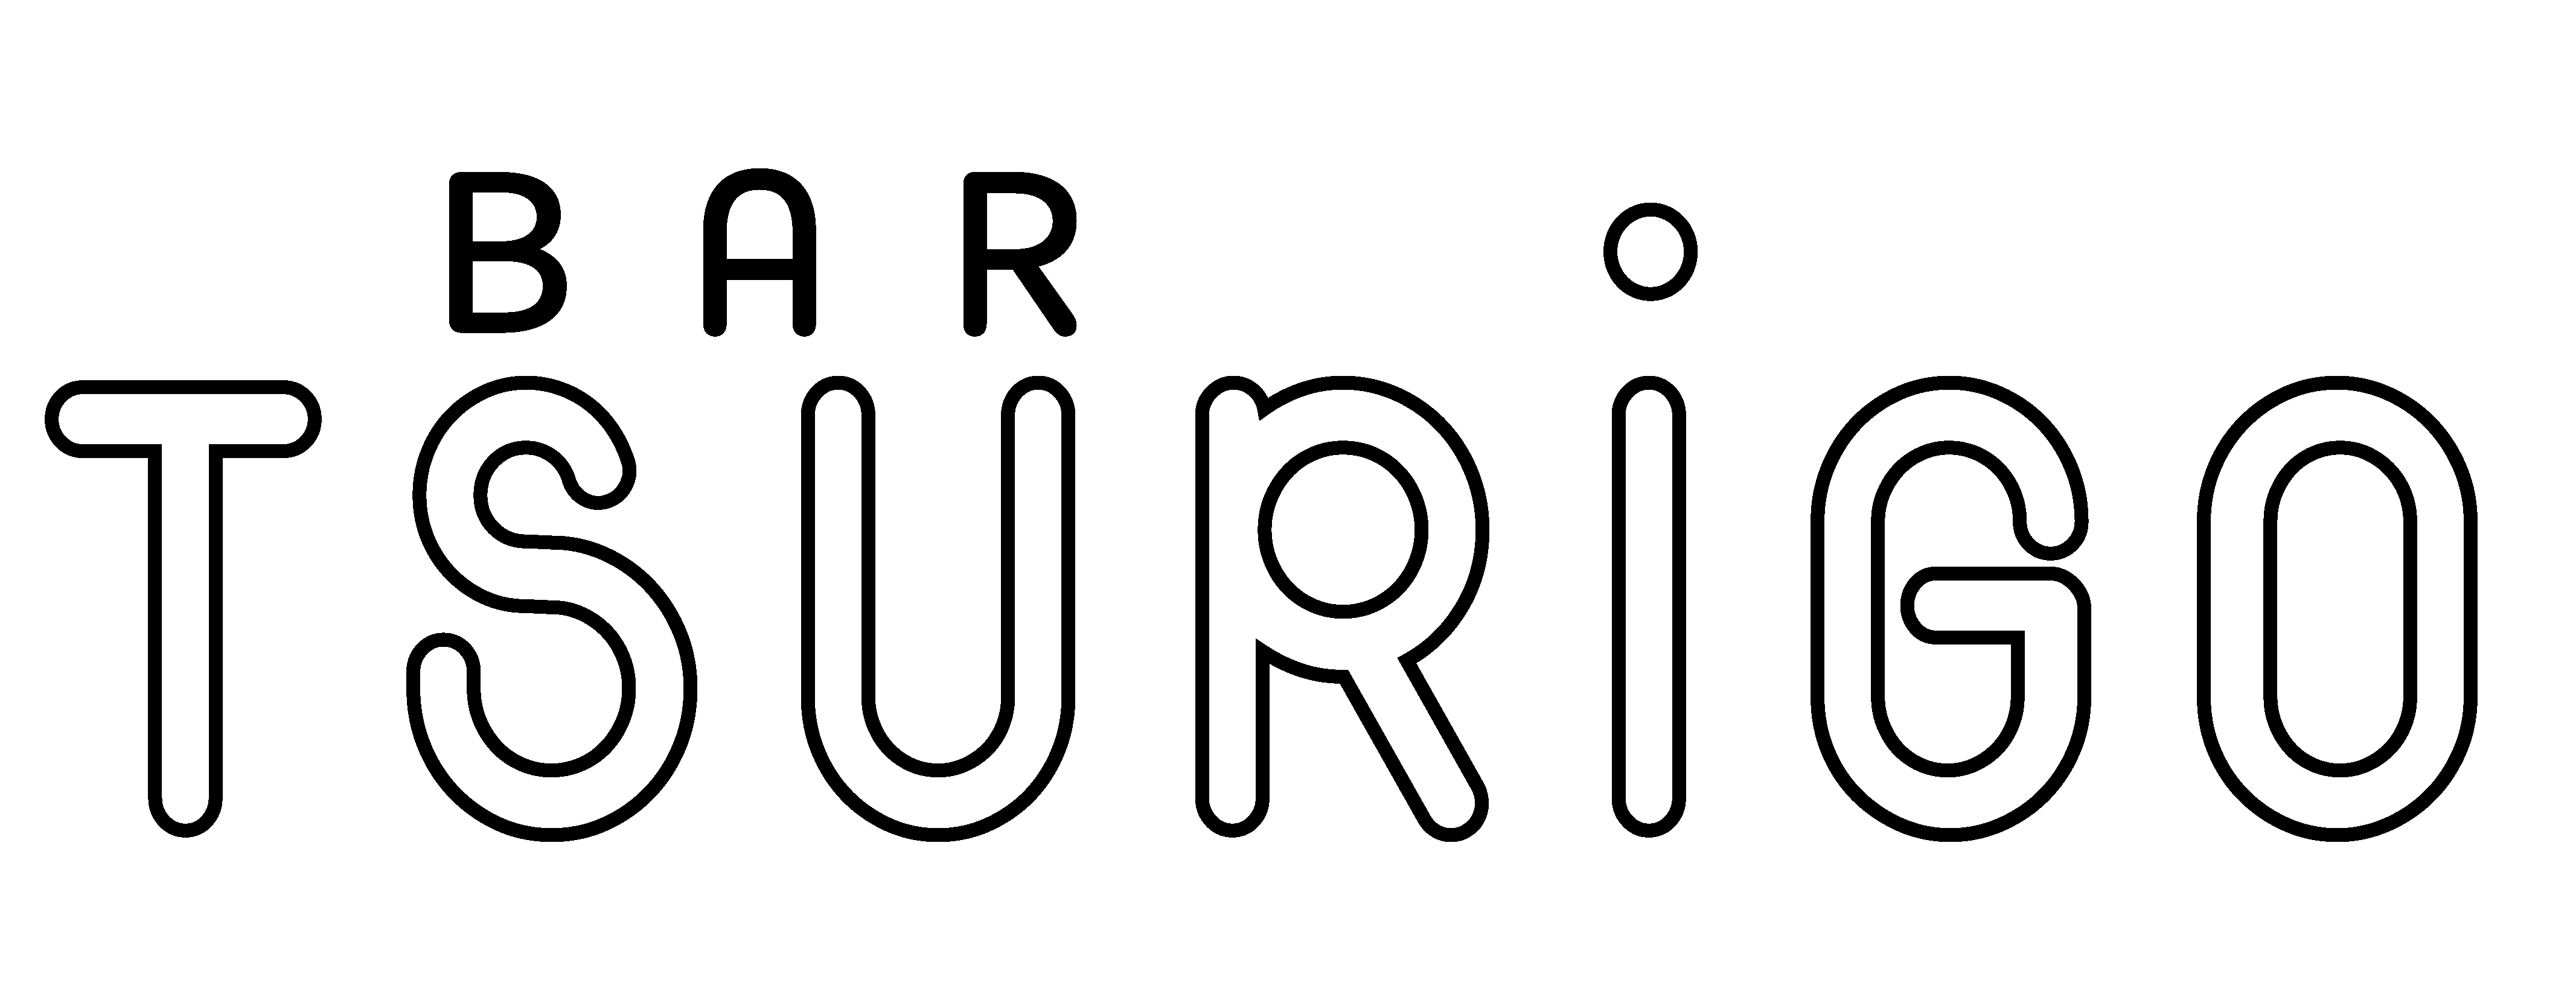 Tsri logo